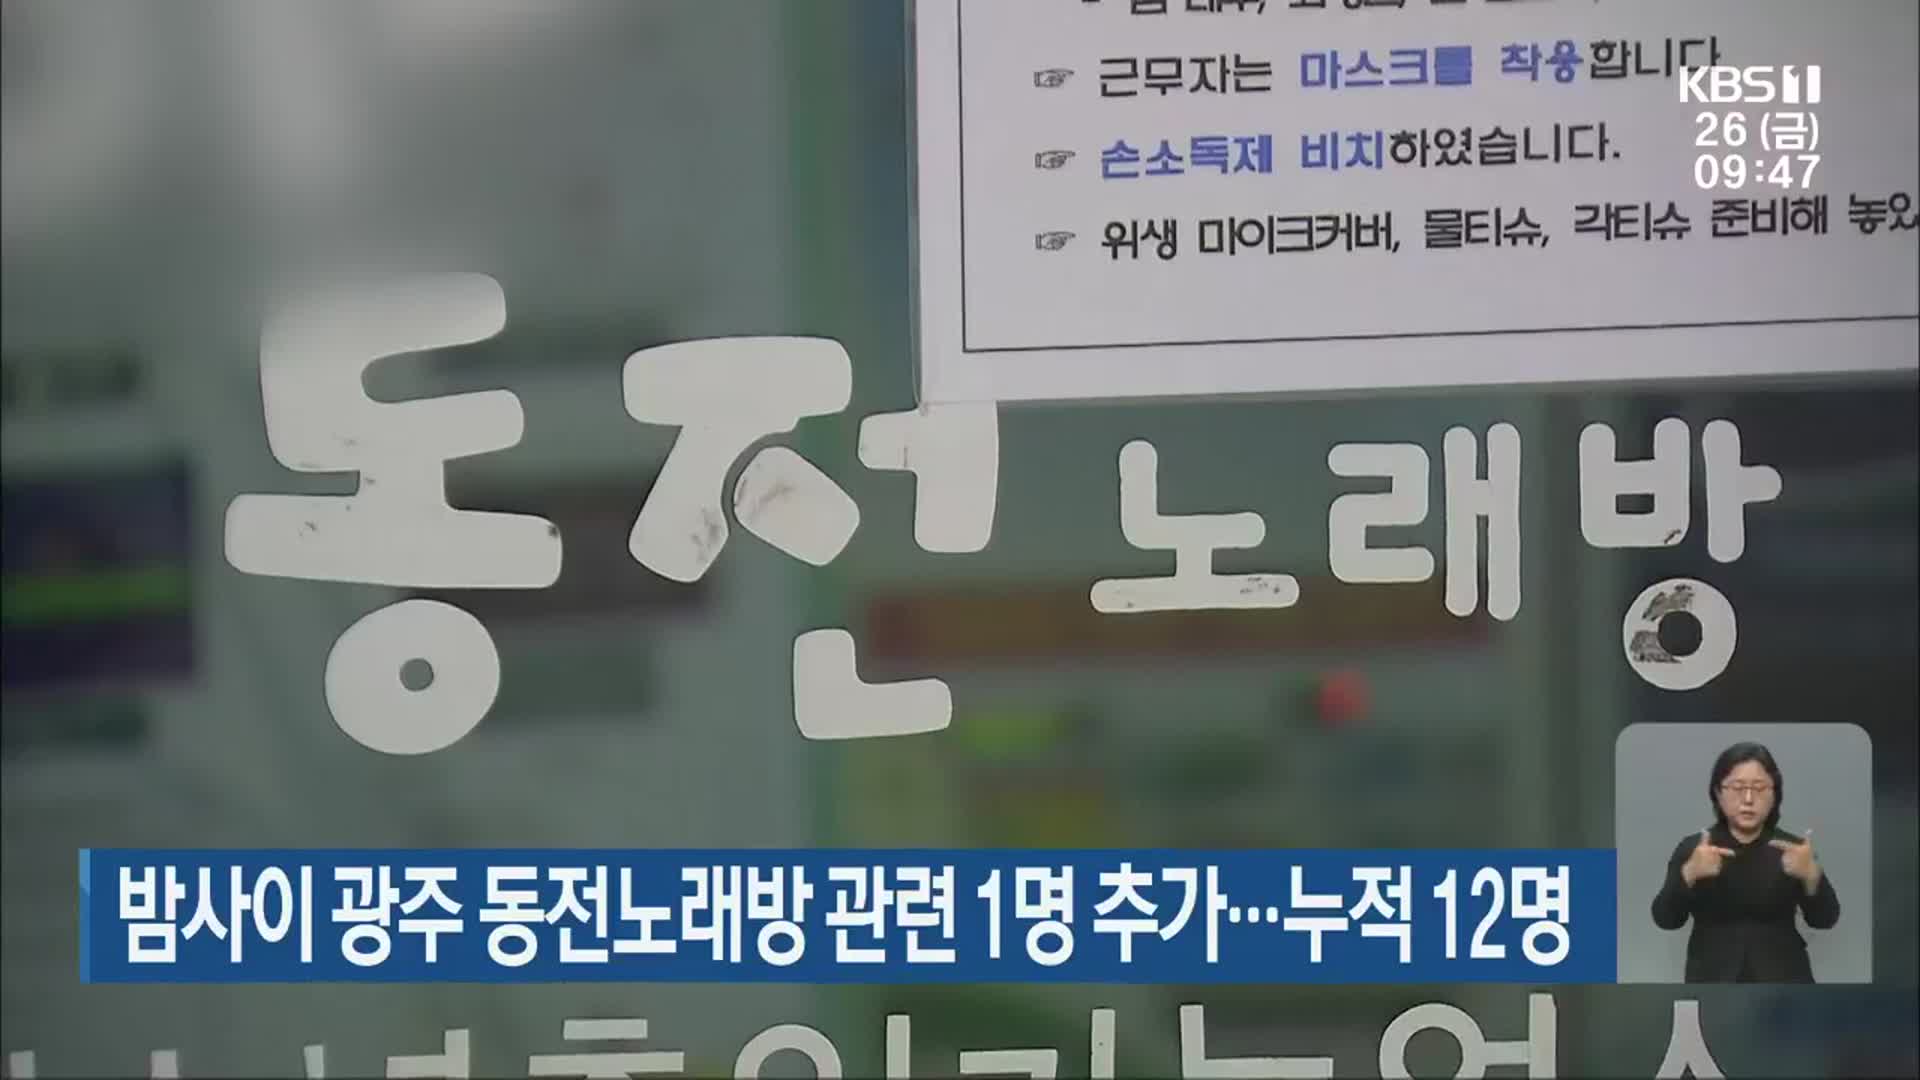 밤사이 광주 동전노래방 관련 1명 추가…누적 12명